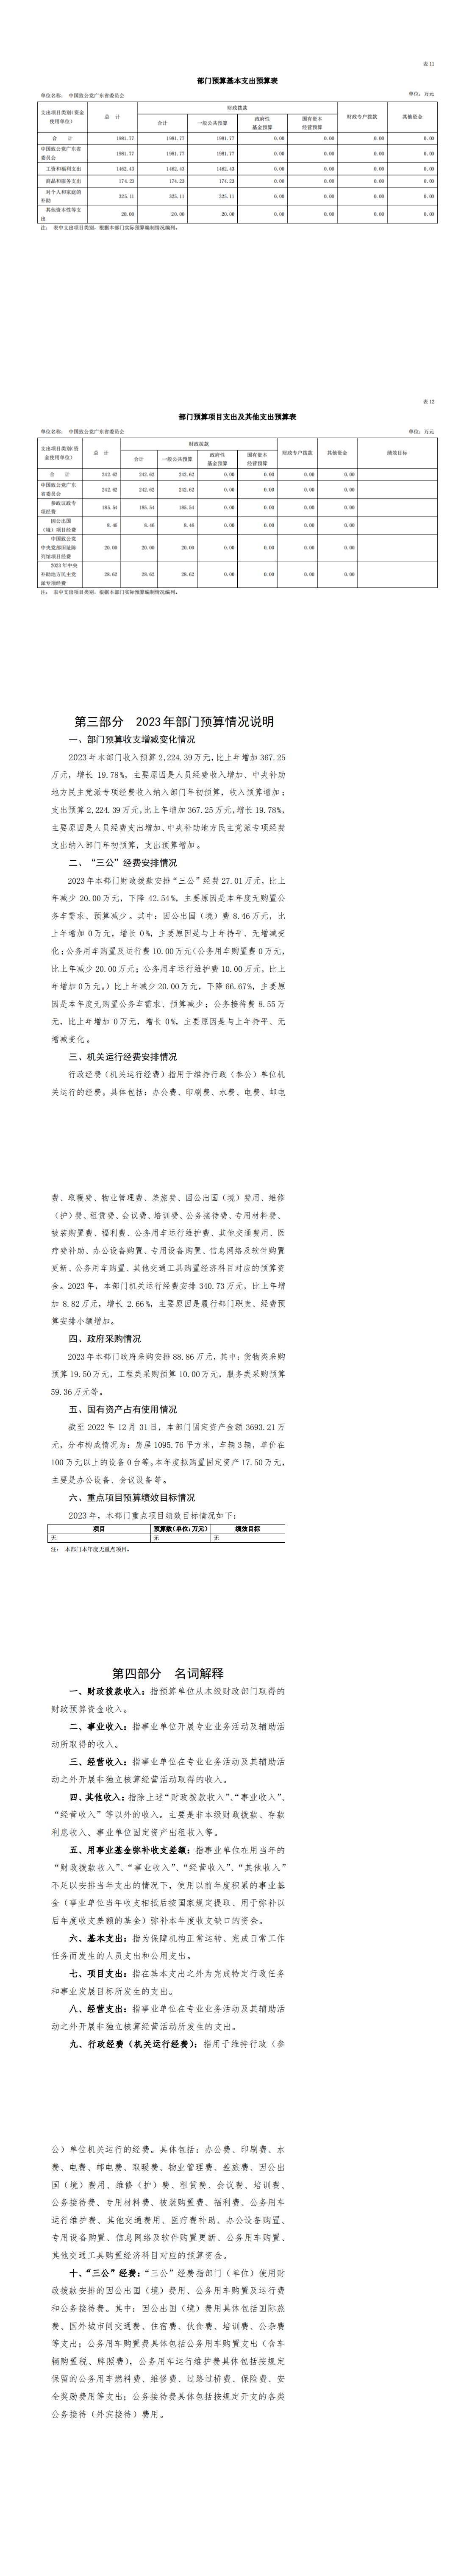 2023年中国致公党广东省委员会部门预算_00.png